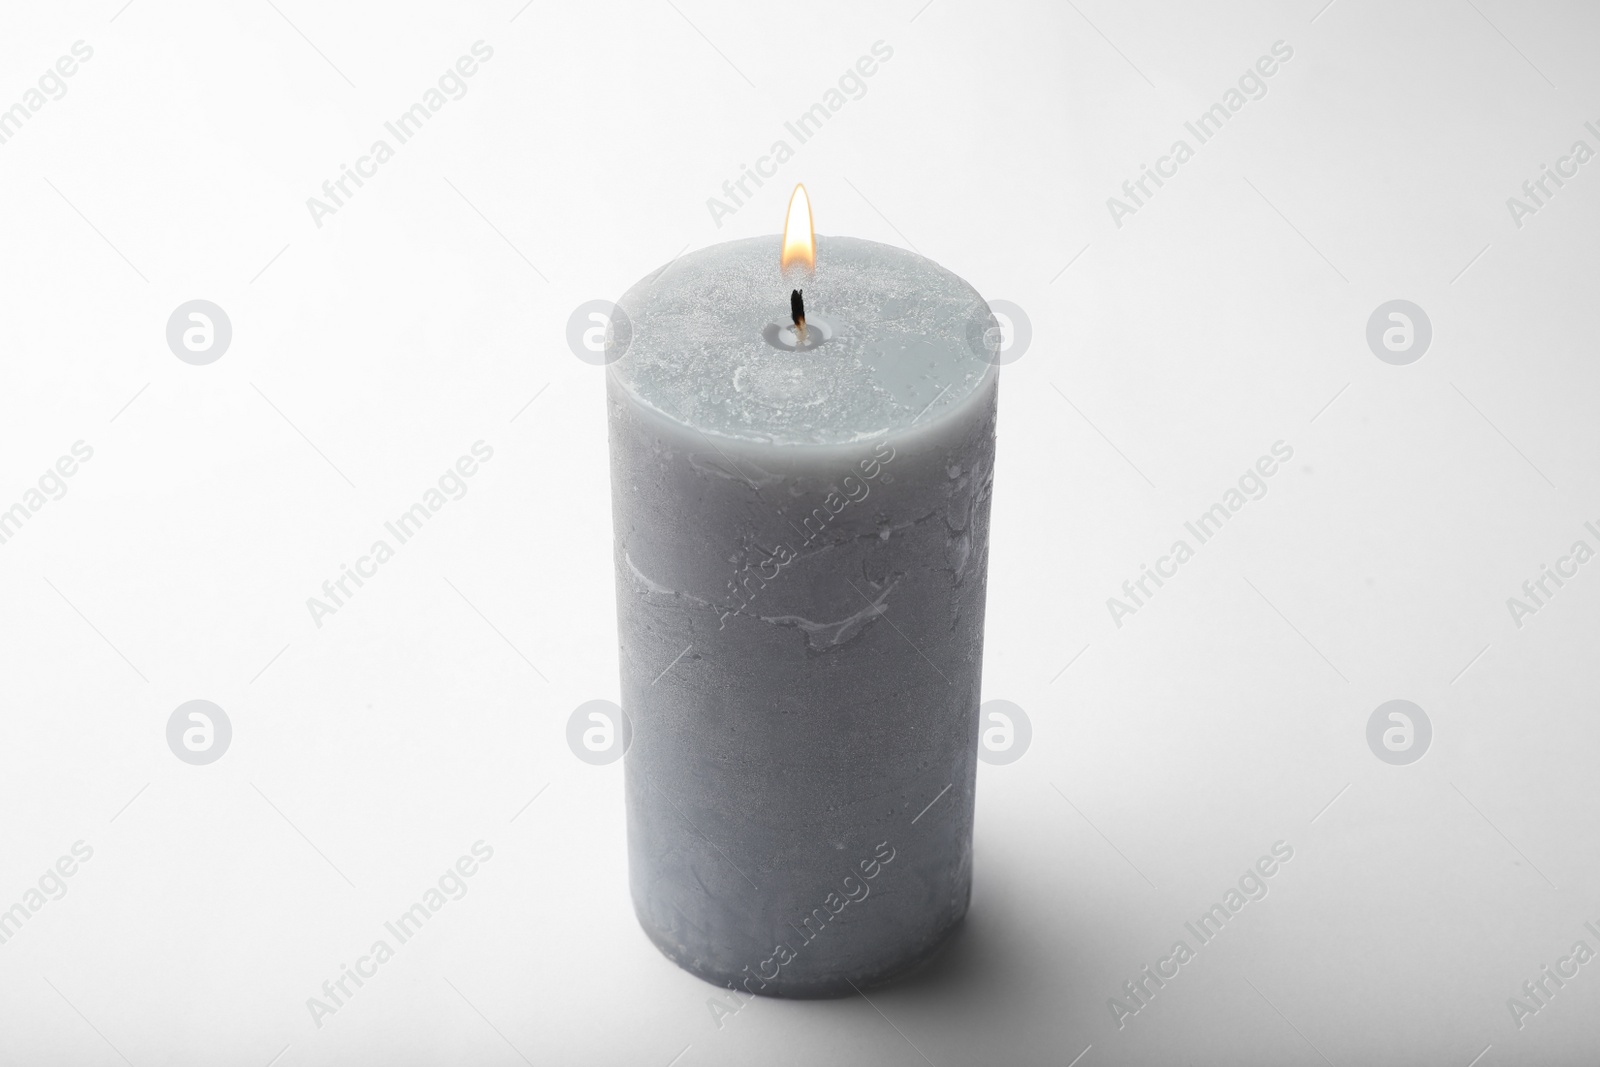 Photo of Burning grey wax candle isolated on white